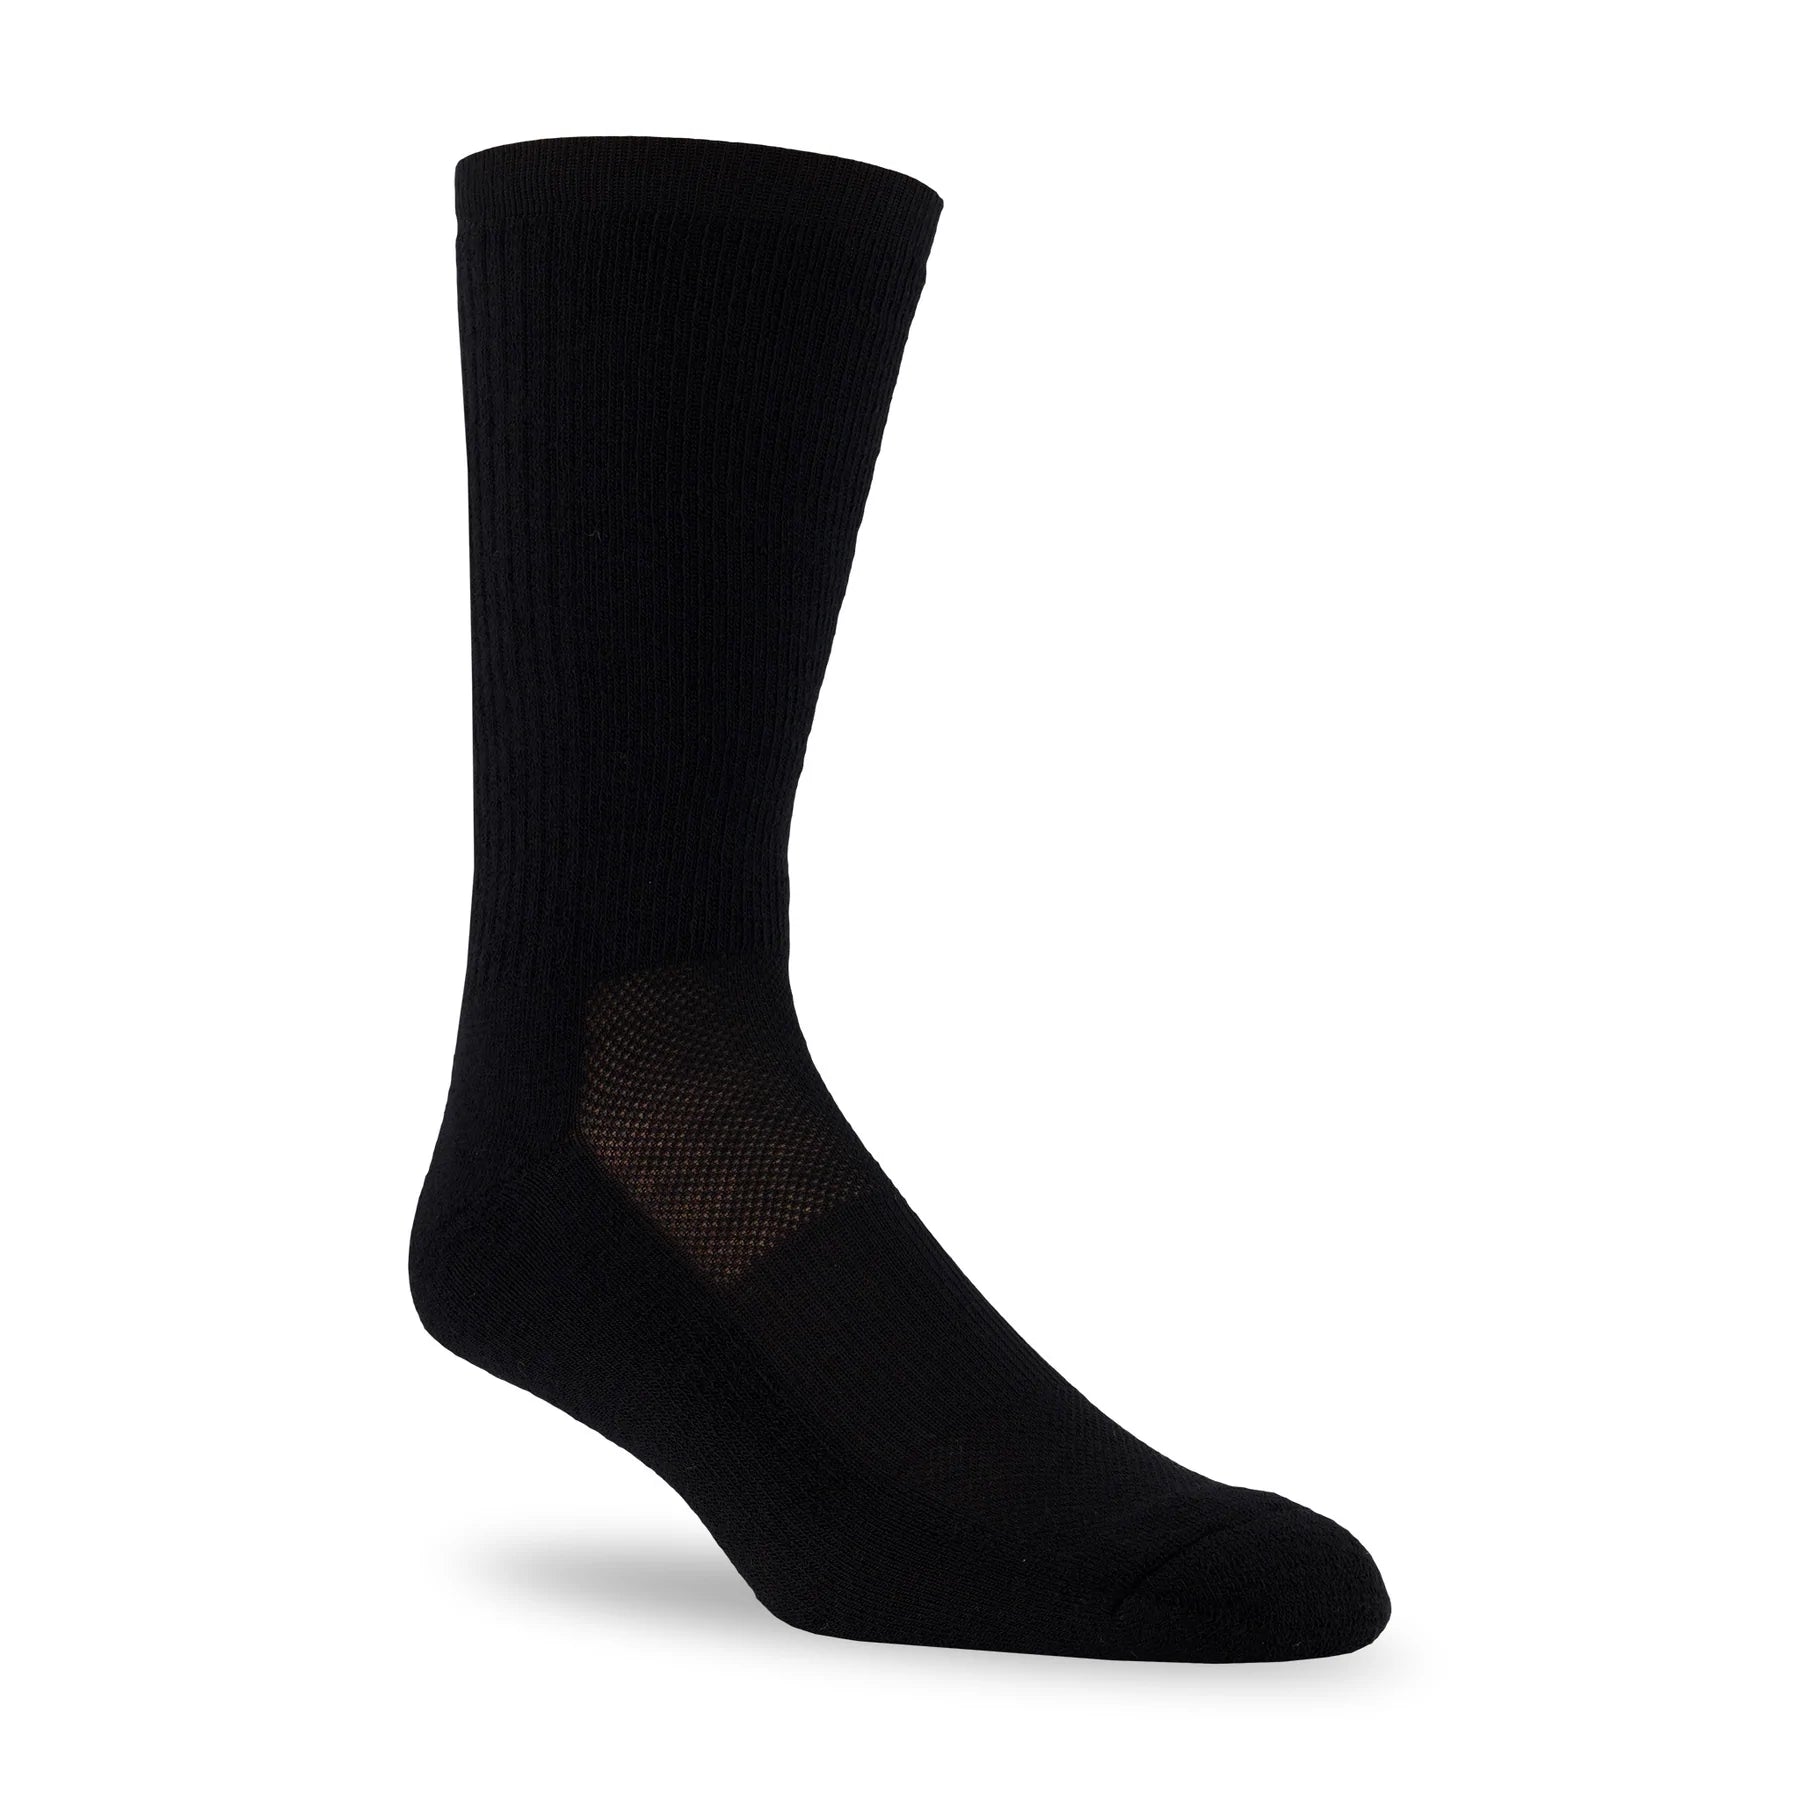 J.B. Field’s “Summer Hiker” Merino Wool Hiking Socks – Black